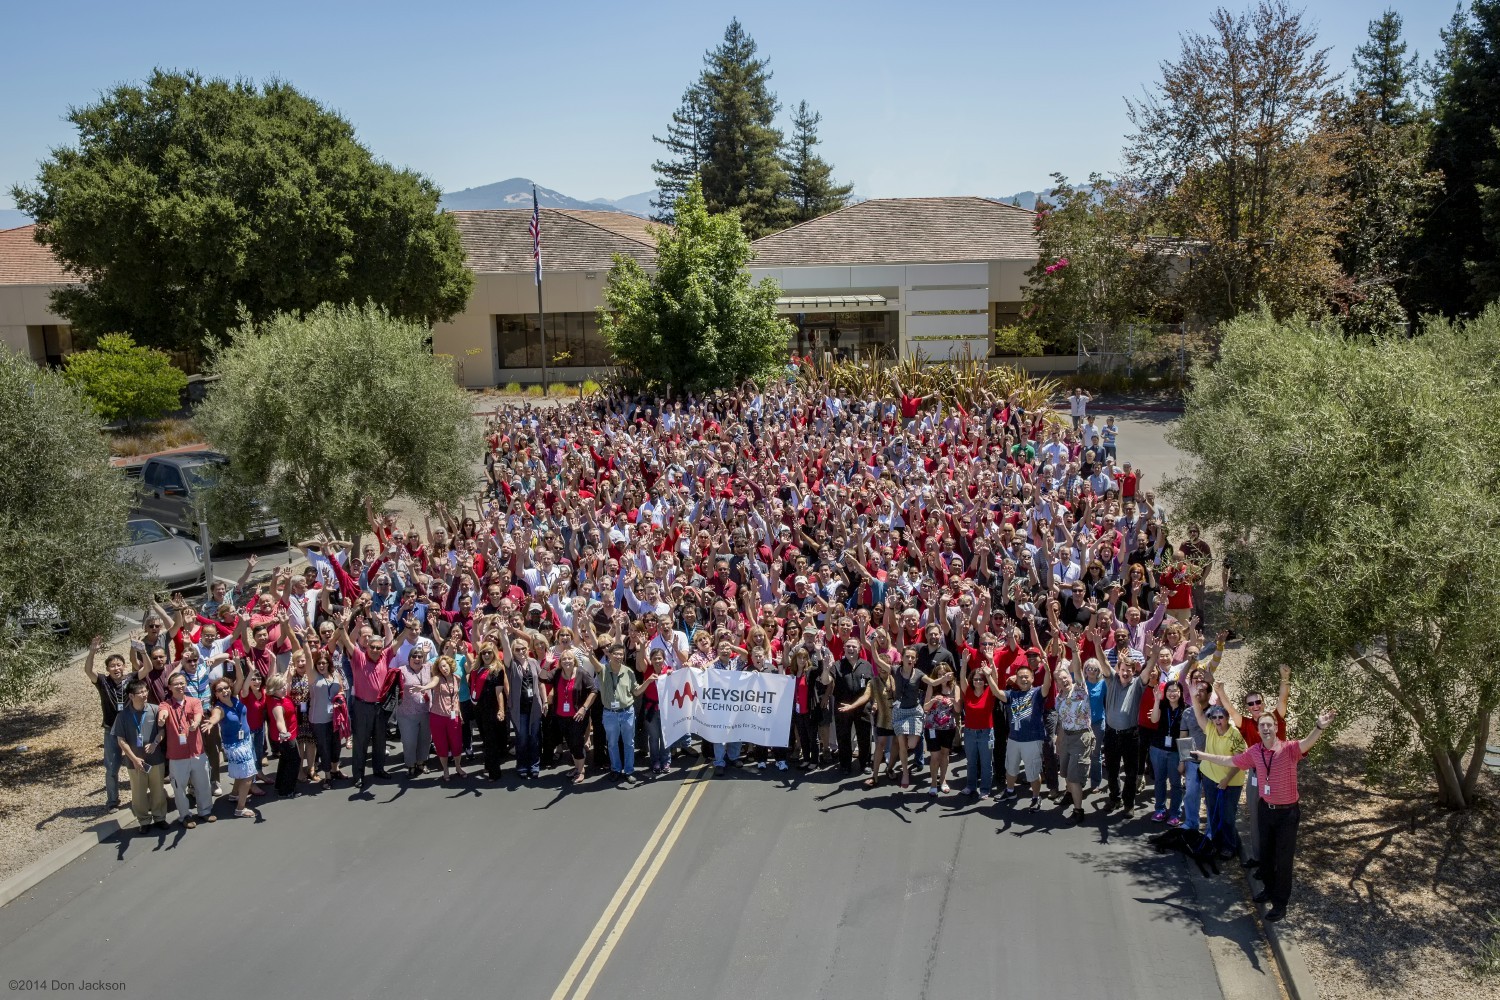 Group photo from Keysight's Santa Rosa, CA headquarters